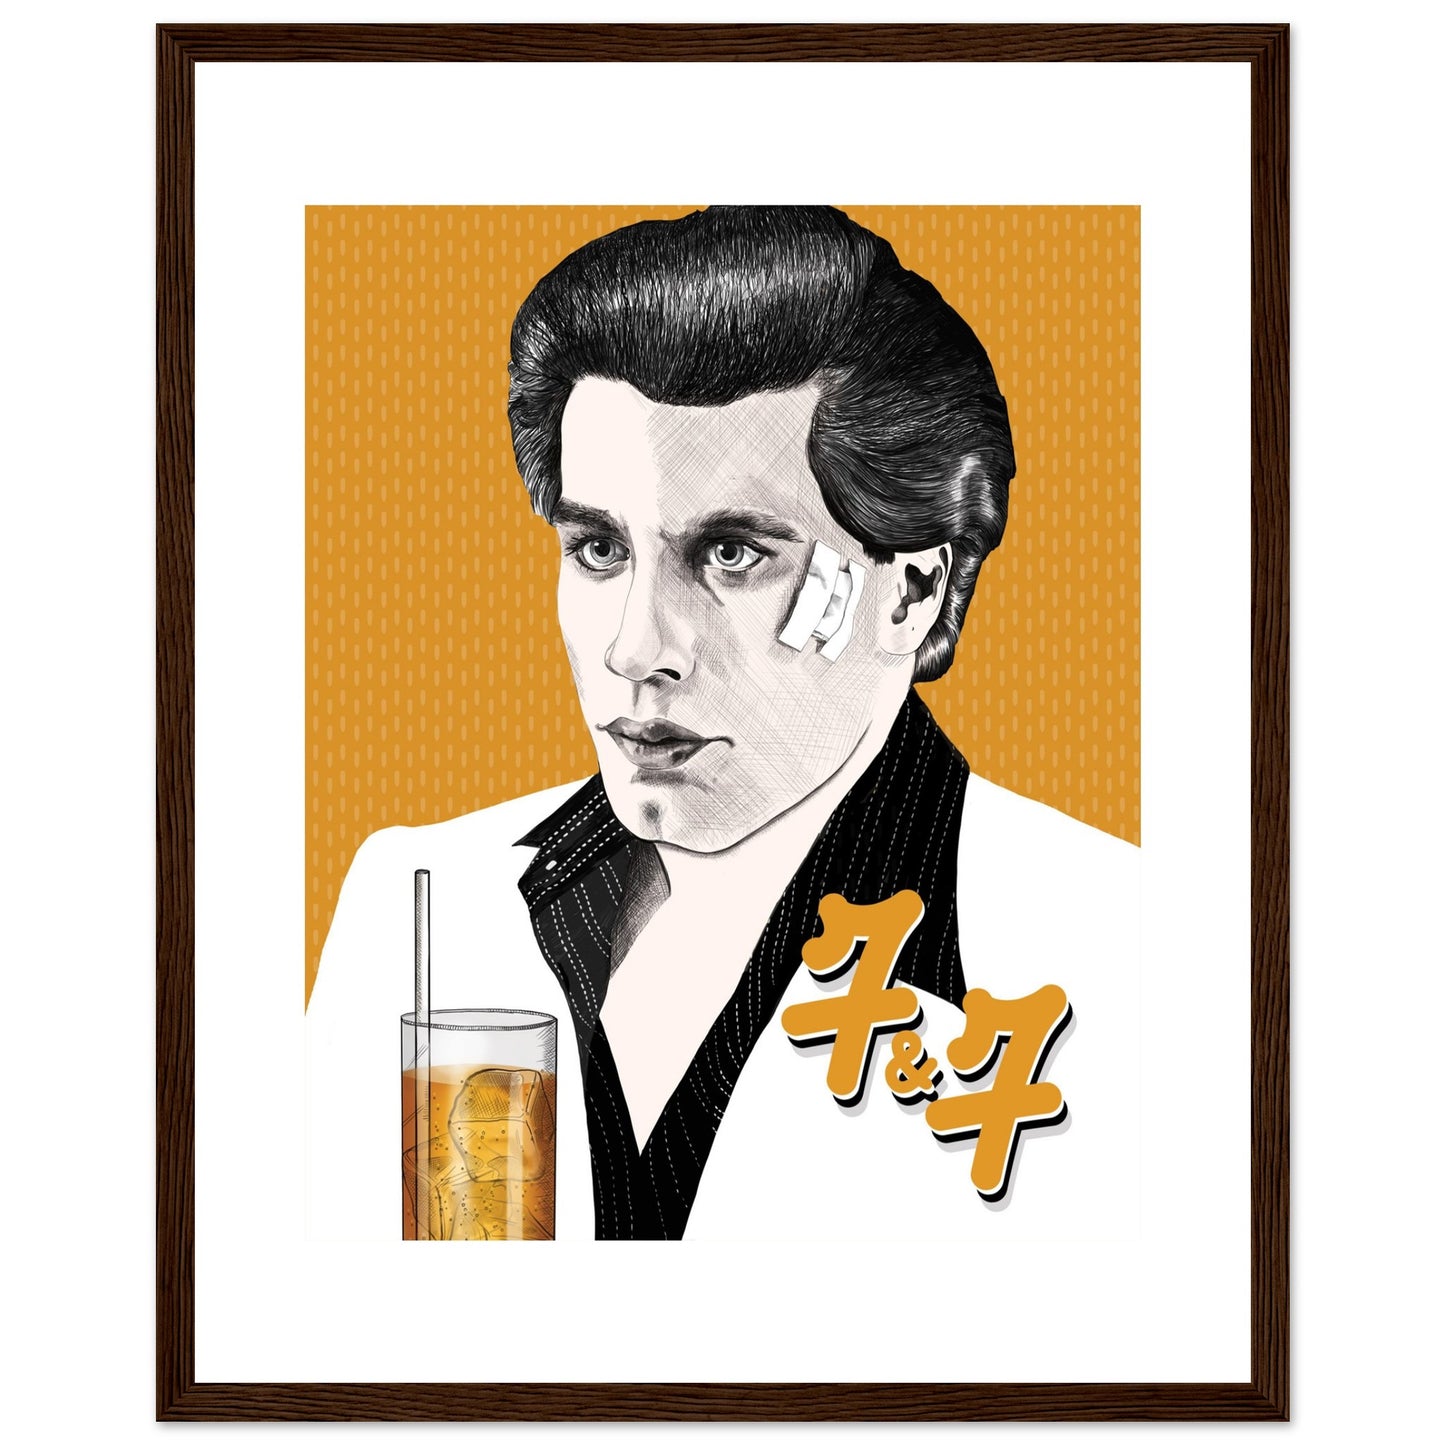 7&7 | John Travolta | Saturday Night Fever - Framed Poster